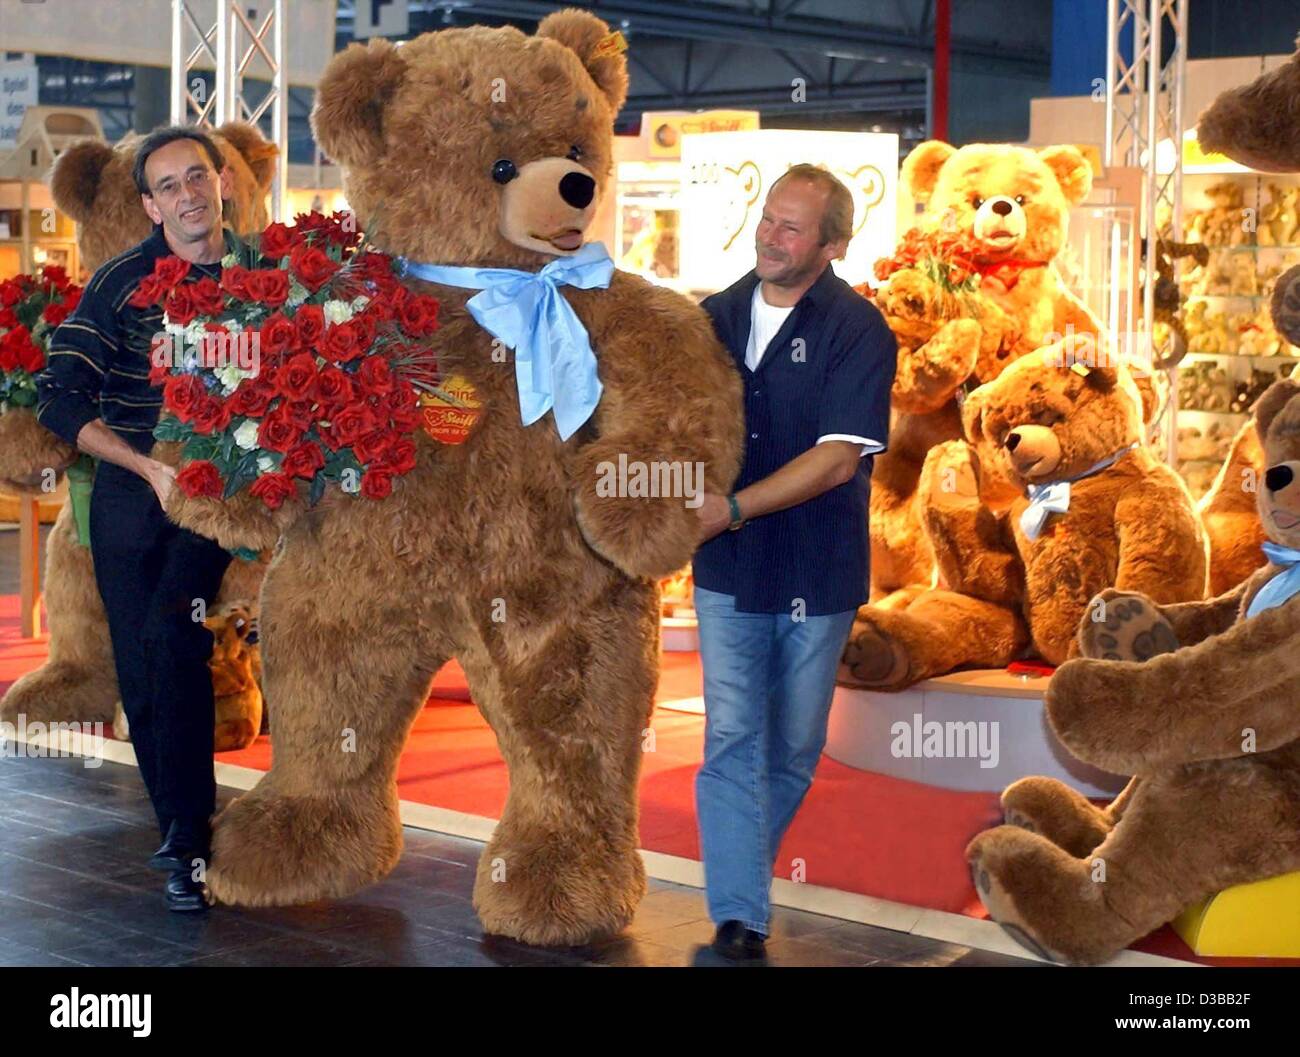 Afp) - Deux hommes organiser deux mètres d'un grand ours en peluche de la  marque 'teiff' à un salon du jouet de Leipzig, Allemagne, 10 octobre 2002. L 'ours en peluche "fabricant" teiff